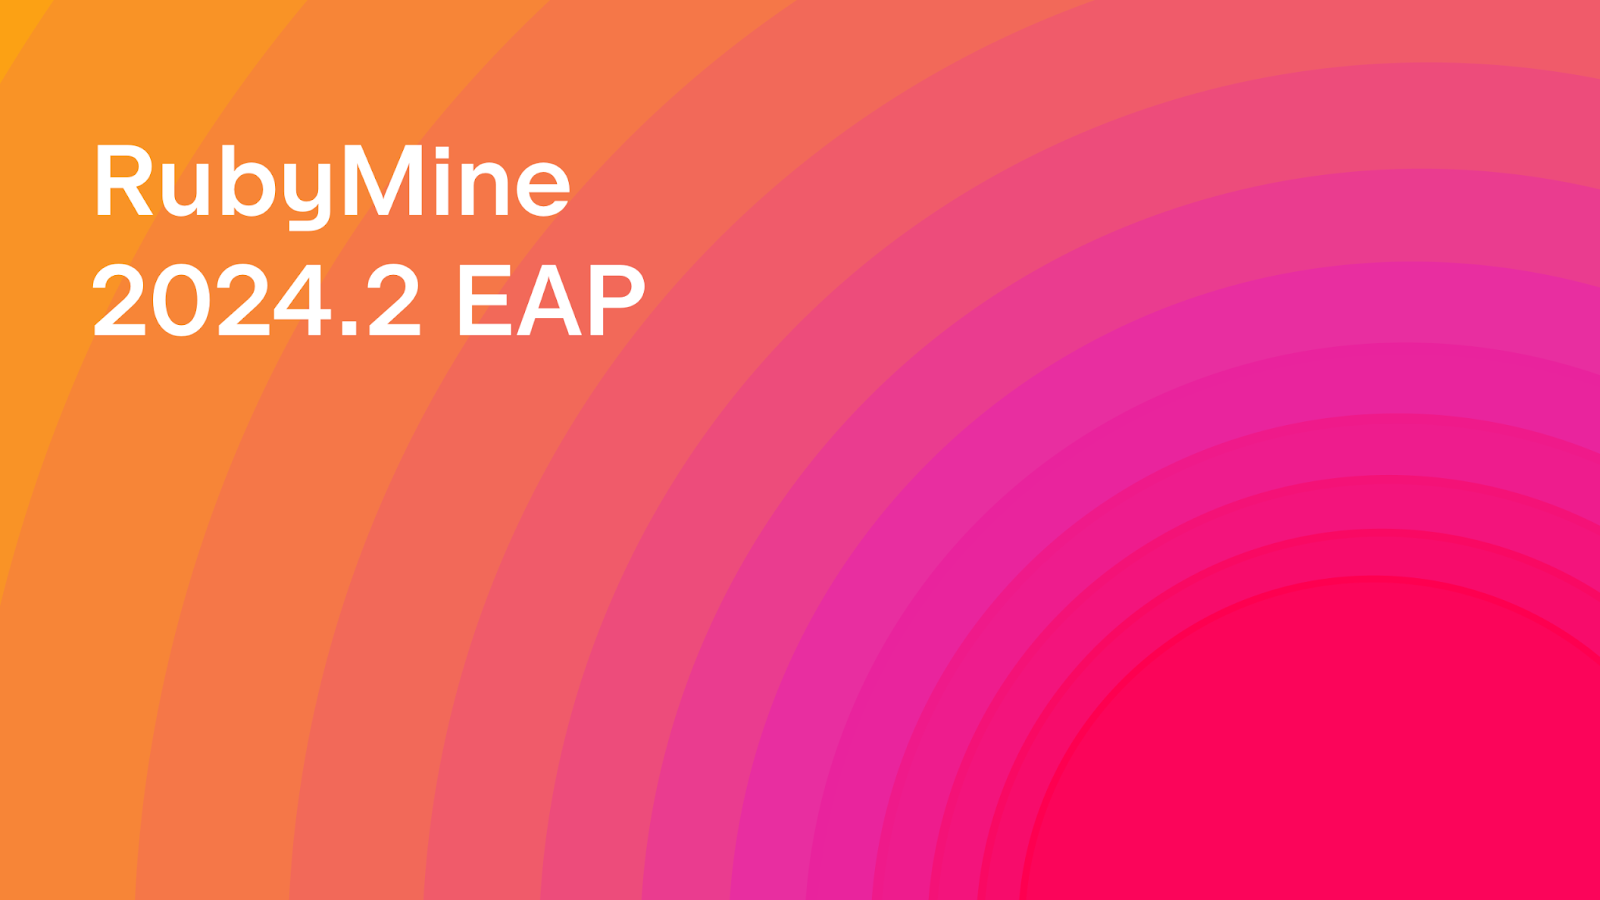 RubyMine 2024.2 Early Access Program Is Open!